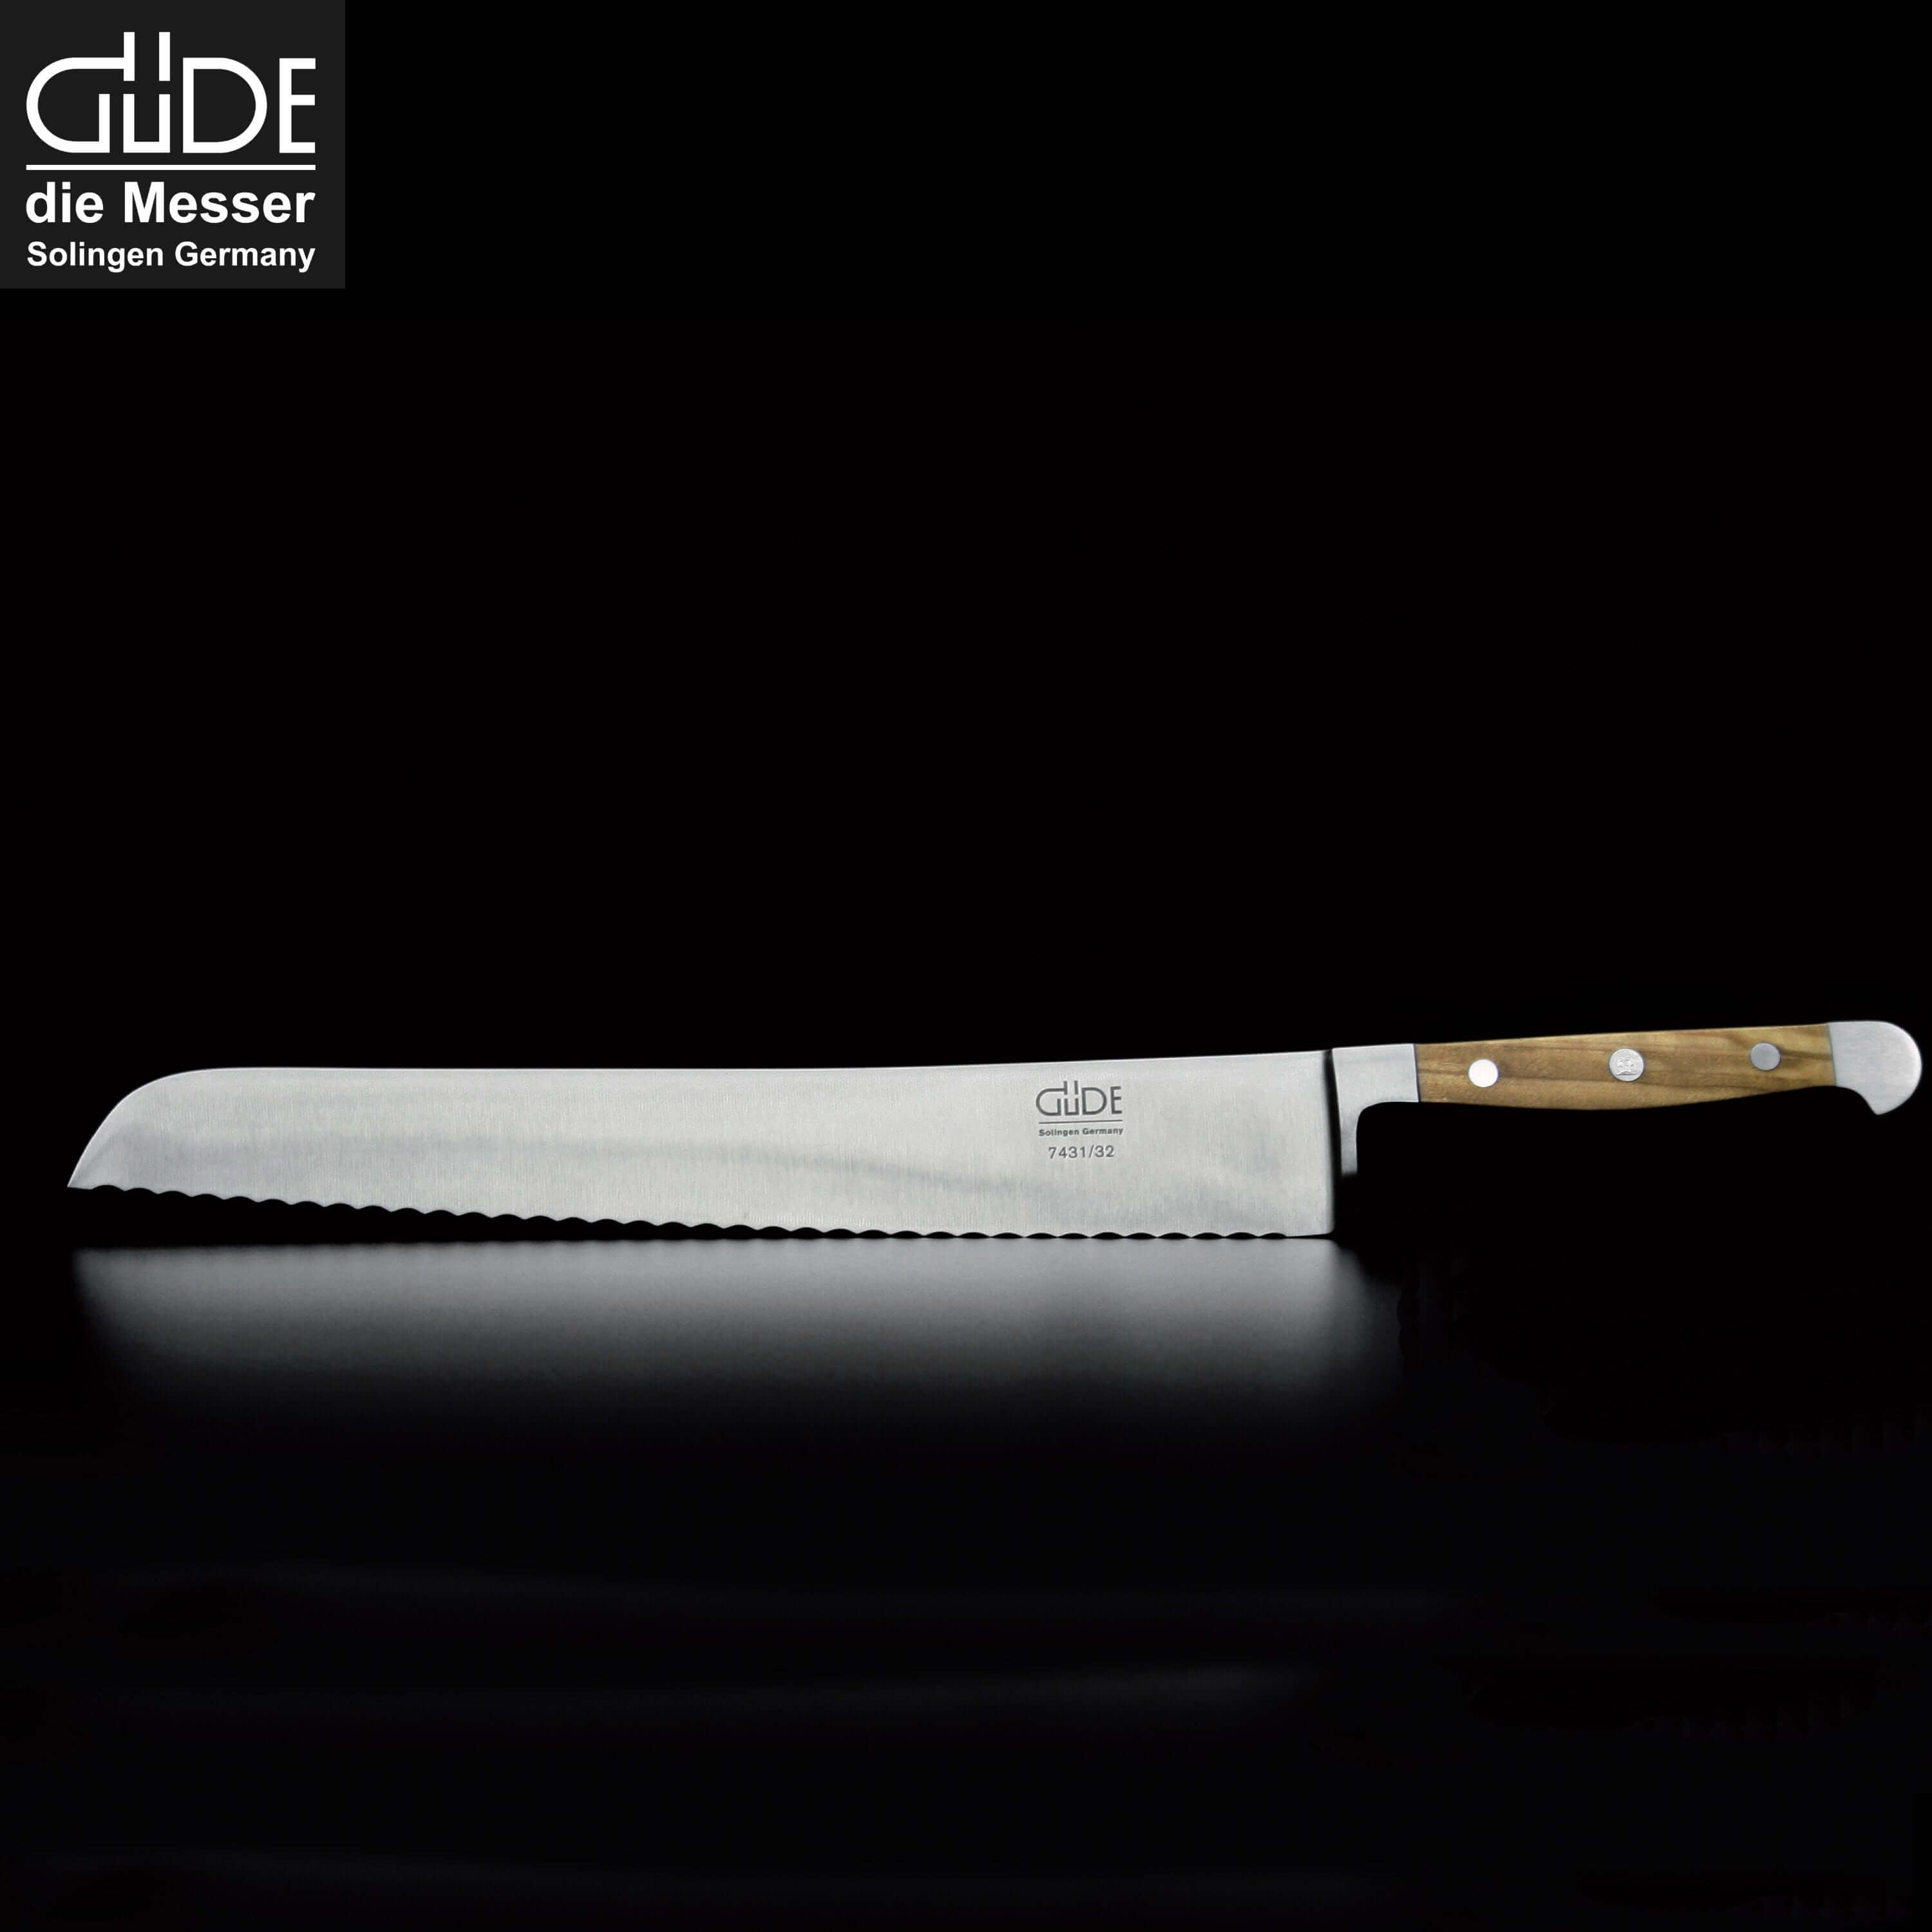 GÜDE SOLINGEN | THE KNIFE BUNDLE